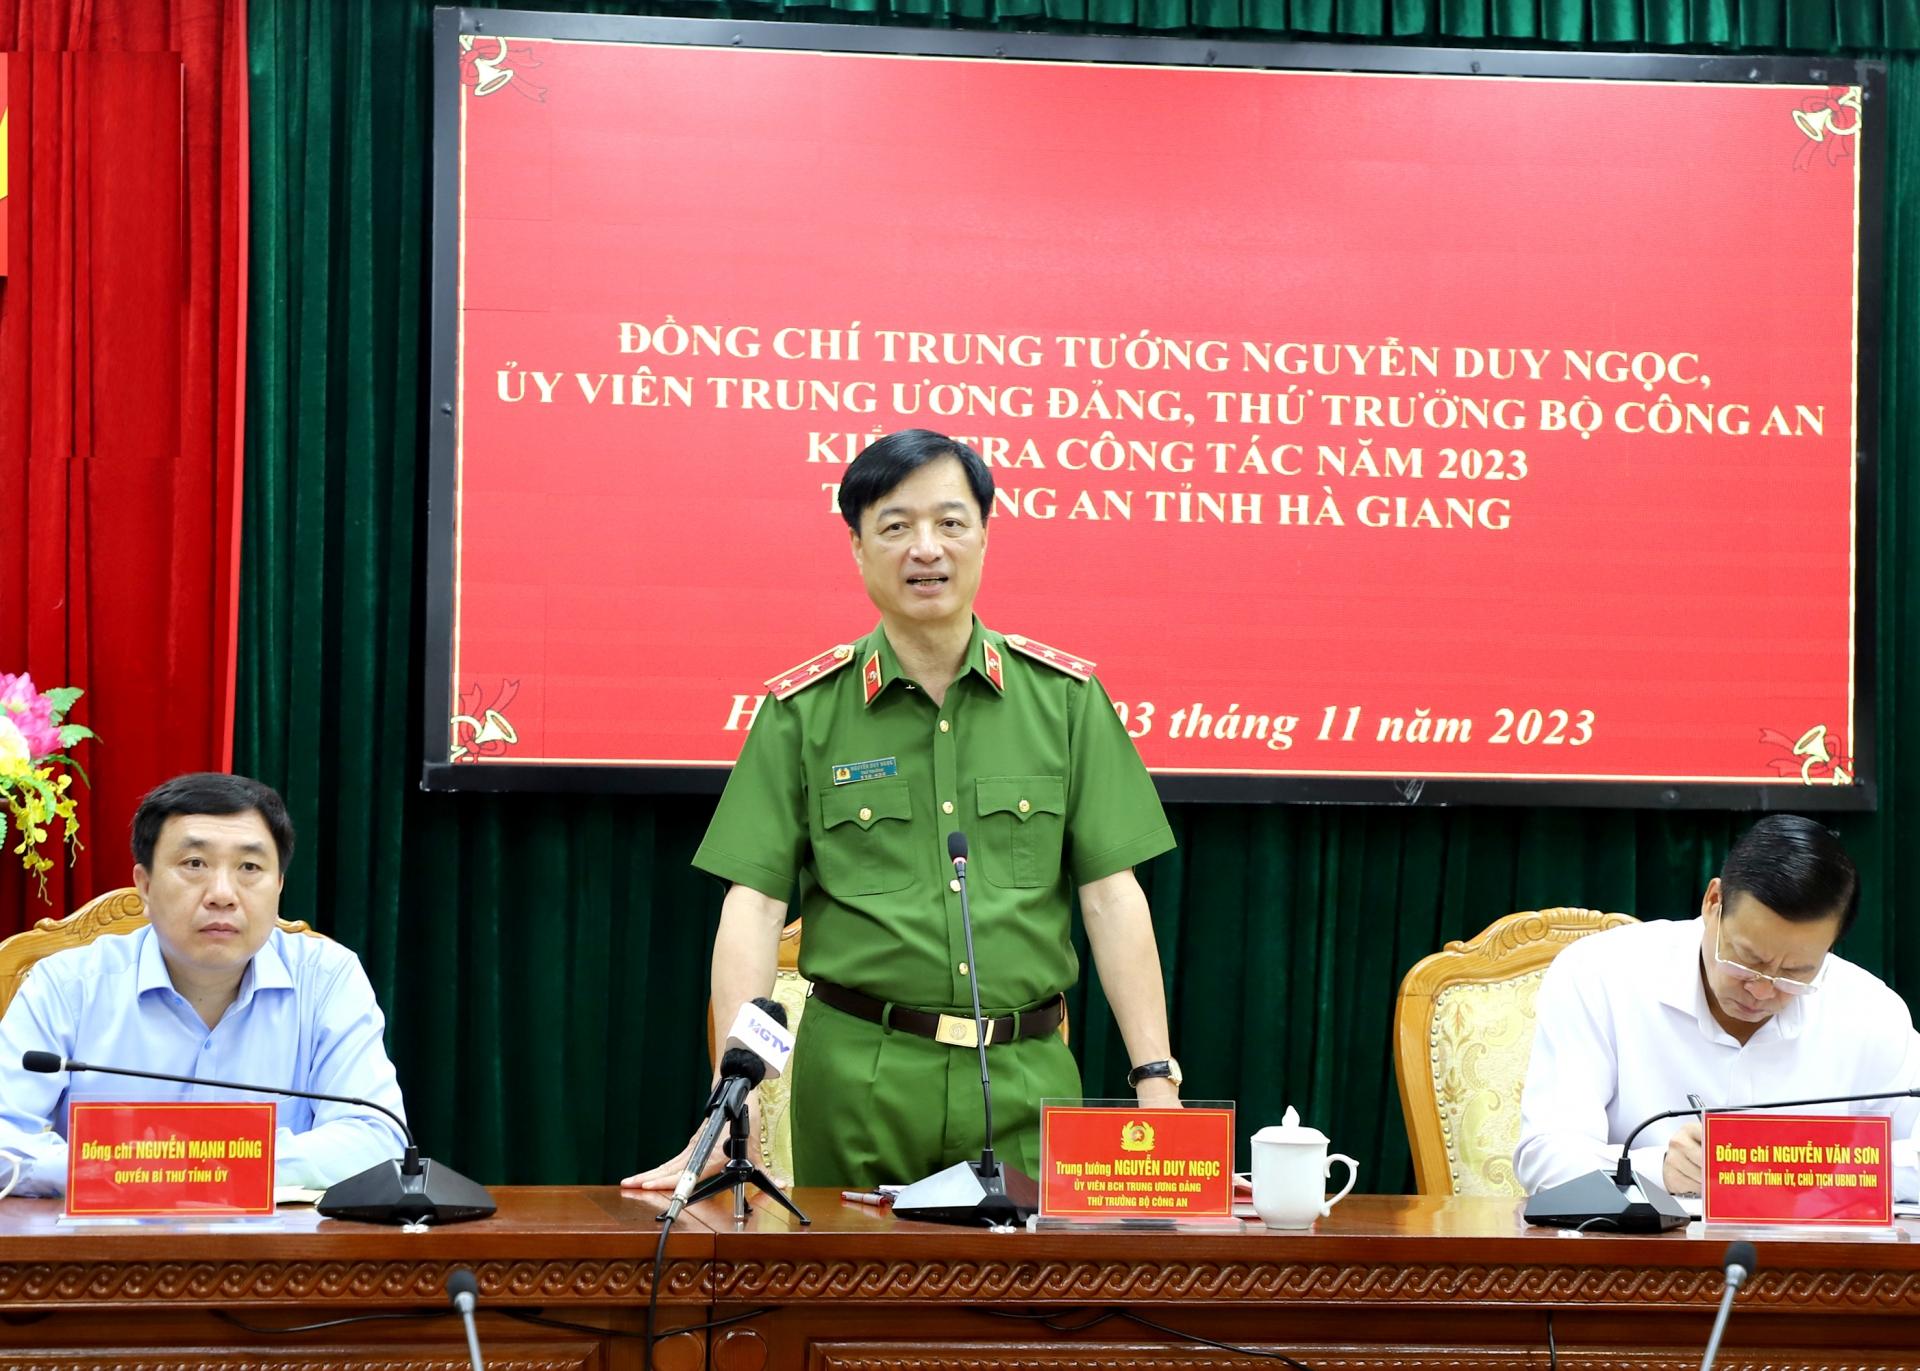 Thứ trưởng Bộ Công an Nguyễn Duy Ngọc phát biểu kết luận buổi làm việc